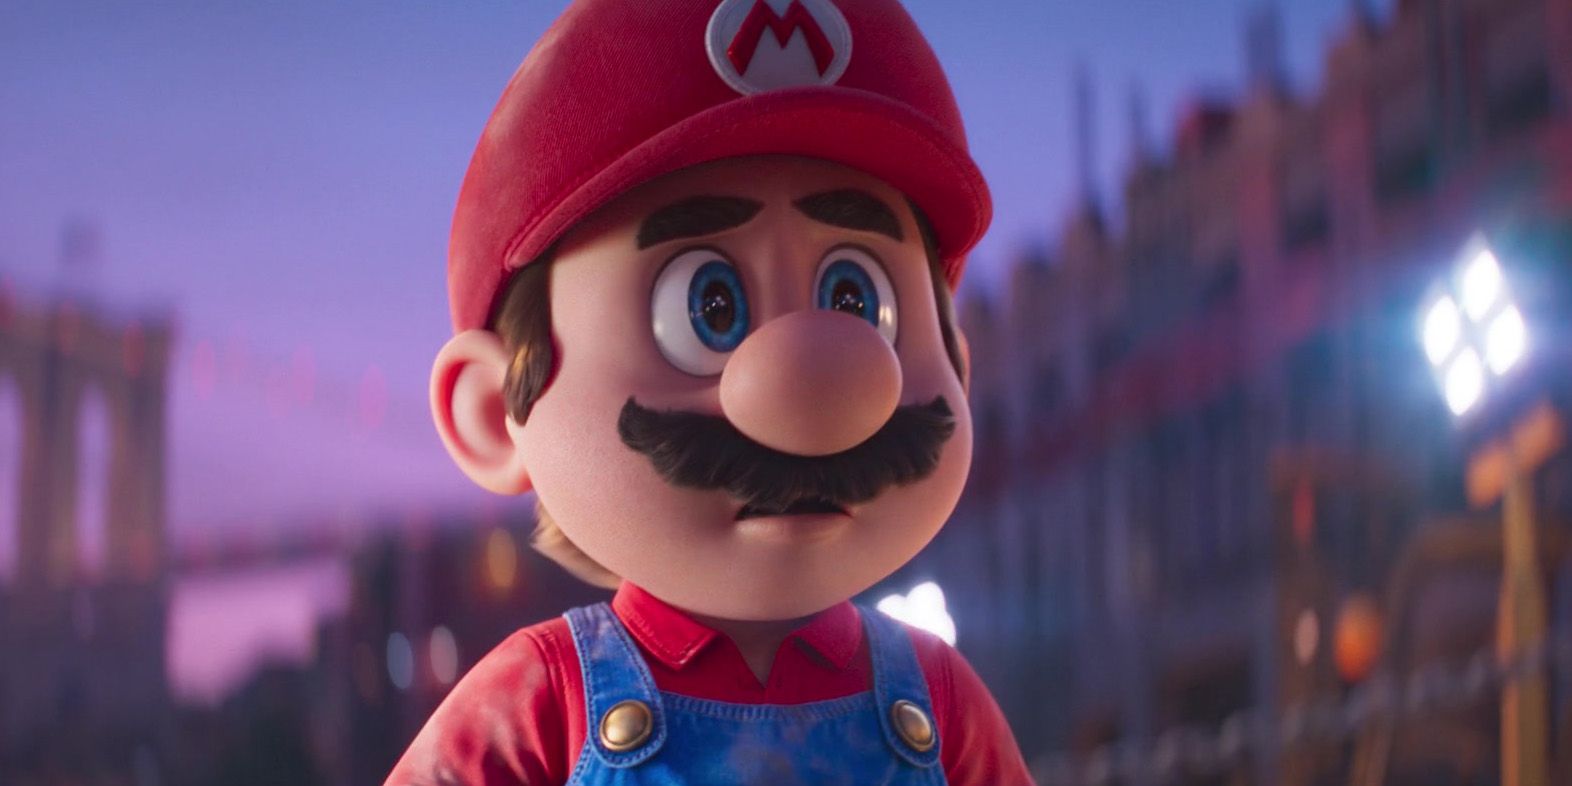 Один предмет из фильма Super Mario Bros. значительно упрощает создание кинематографической вселенной Nintendo